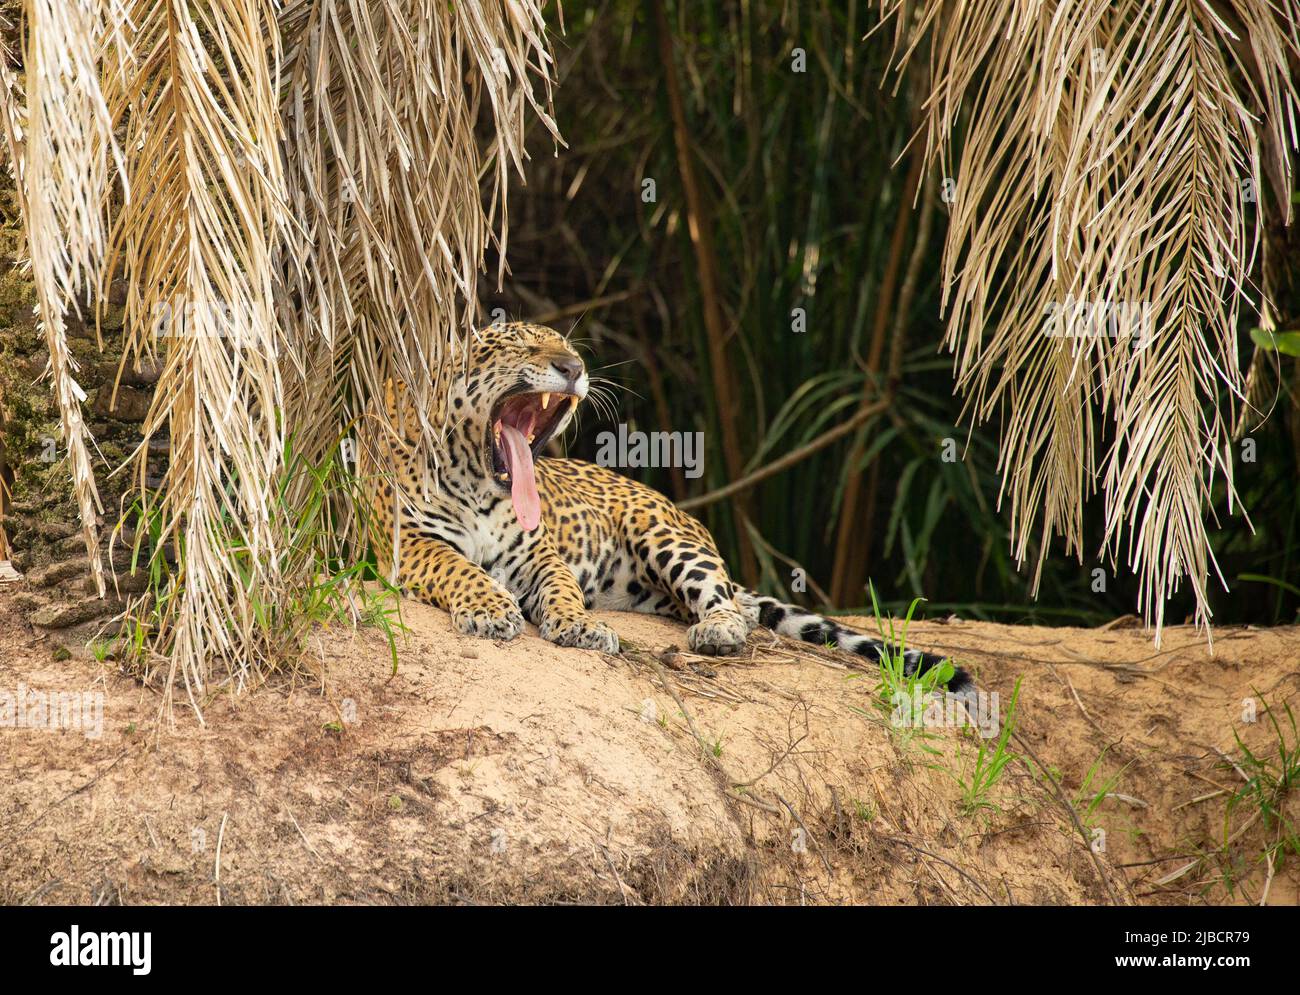 Jaguar (Panthera onca) descansando a orillas del río Foto de stock